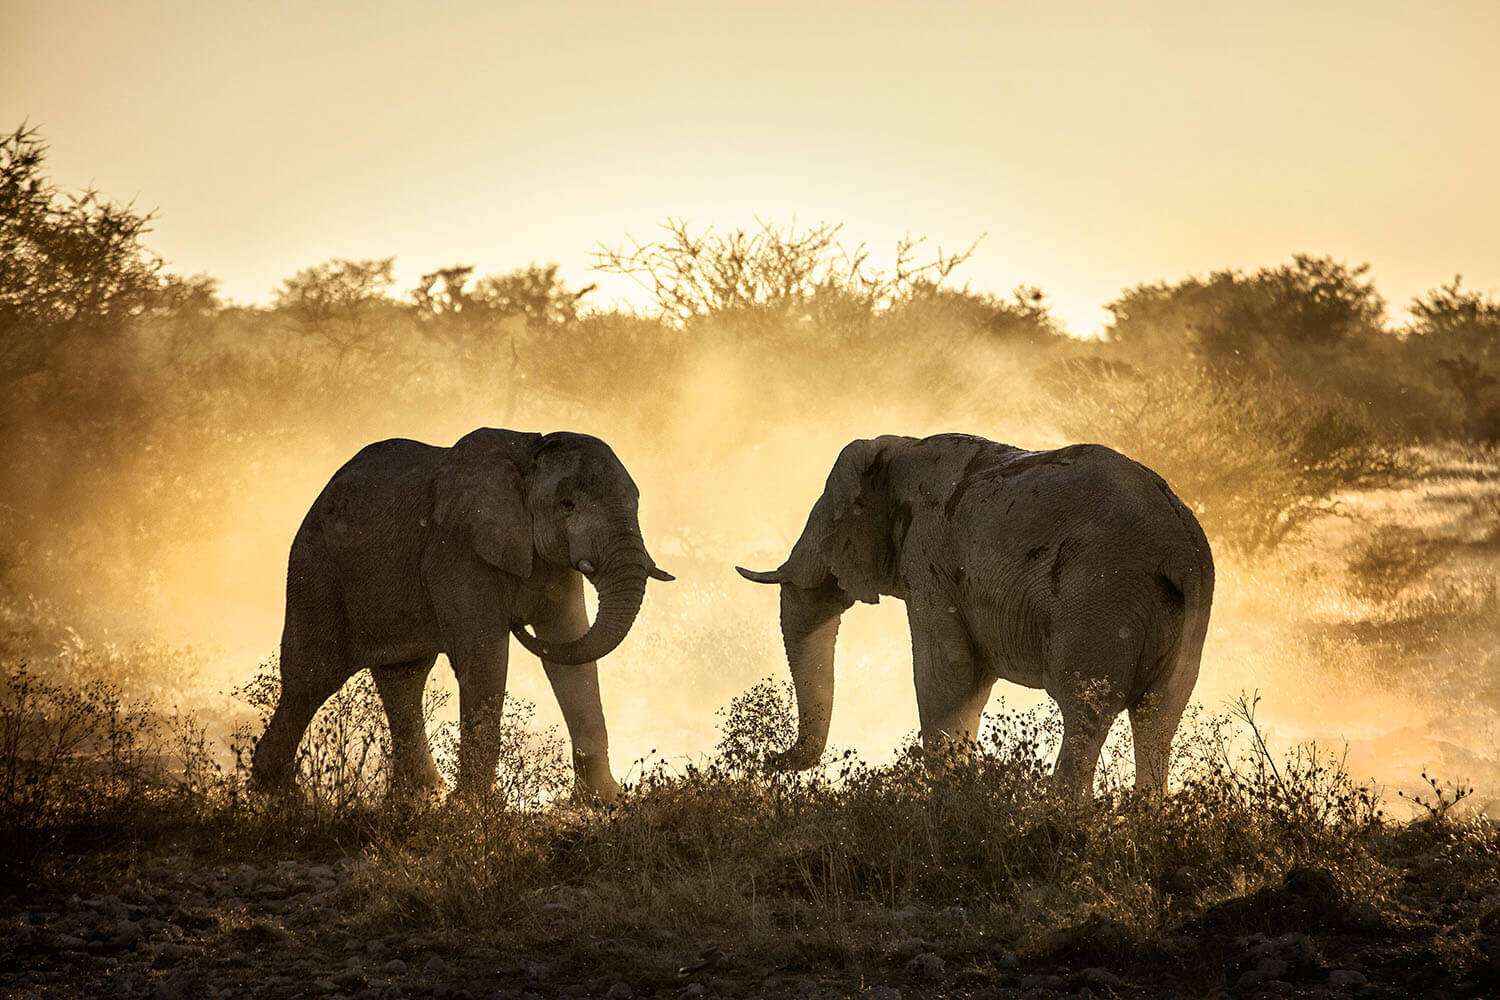 2 elephants fighting